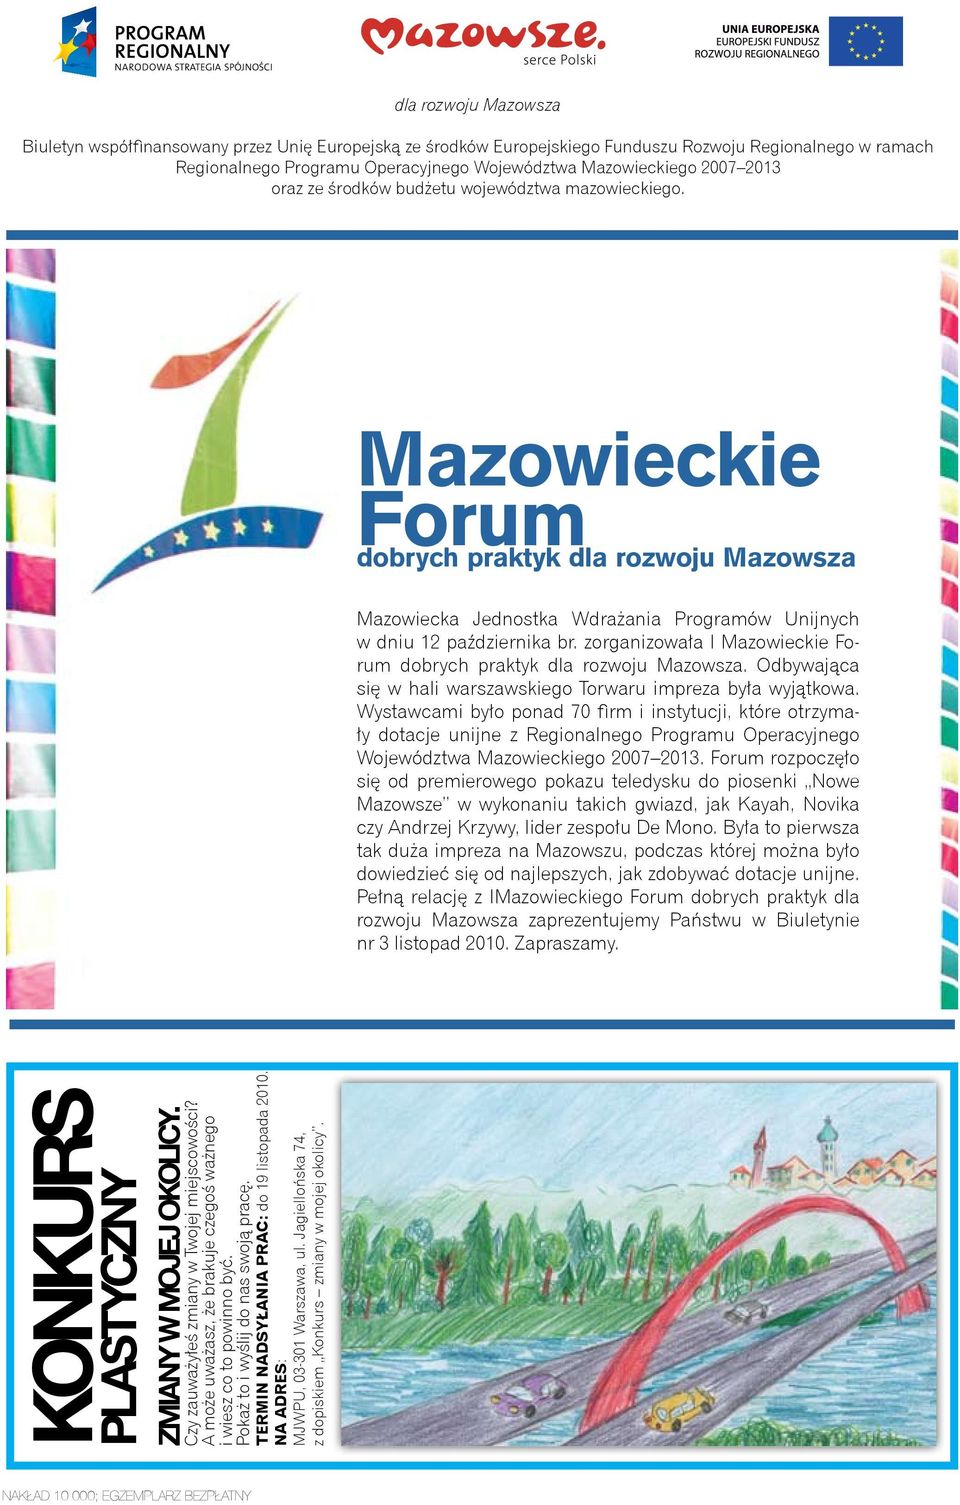 zorganizowała I Mazowieckie Forum dobrych praktyk dla rozwoju Mazowsza. Odbywająca się w hali warszawskiego Torwaru impreza była wyjątkowa.